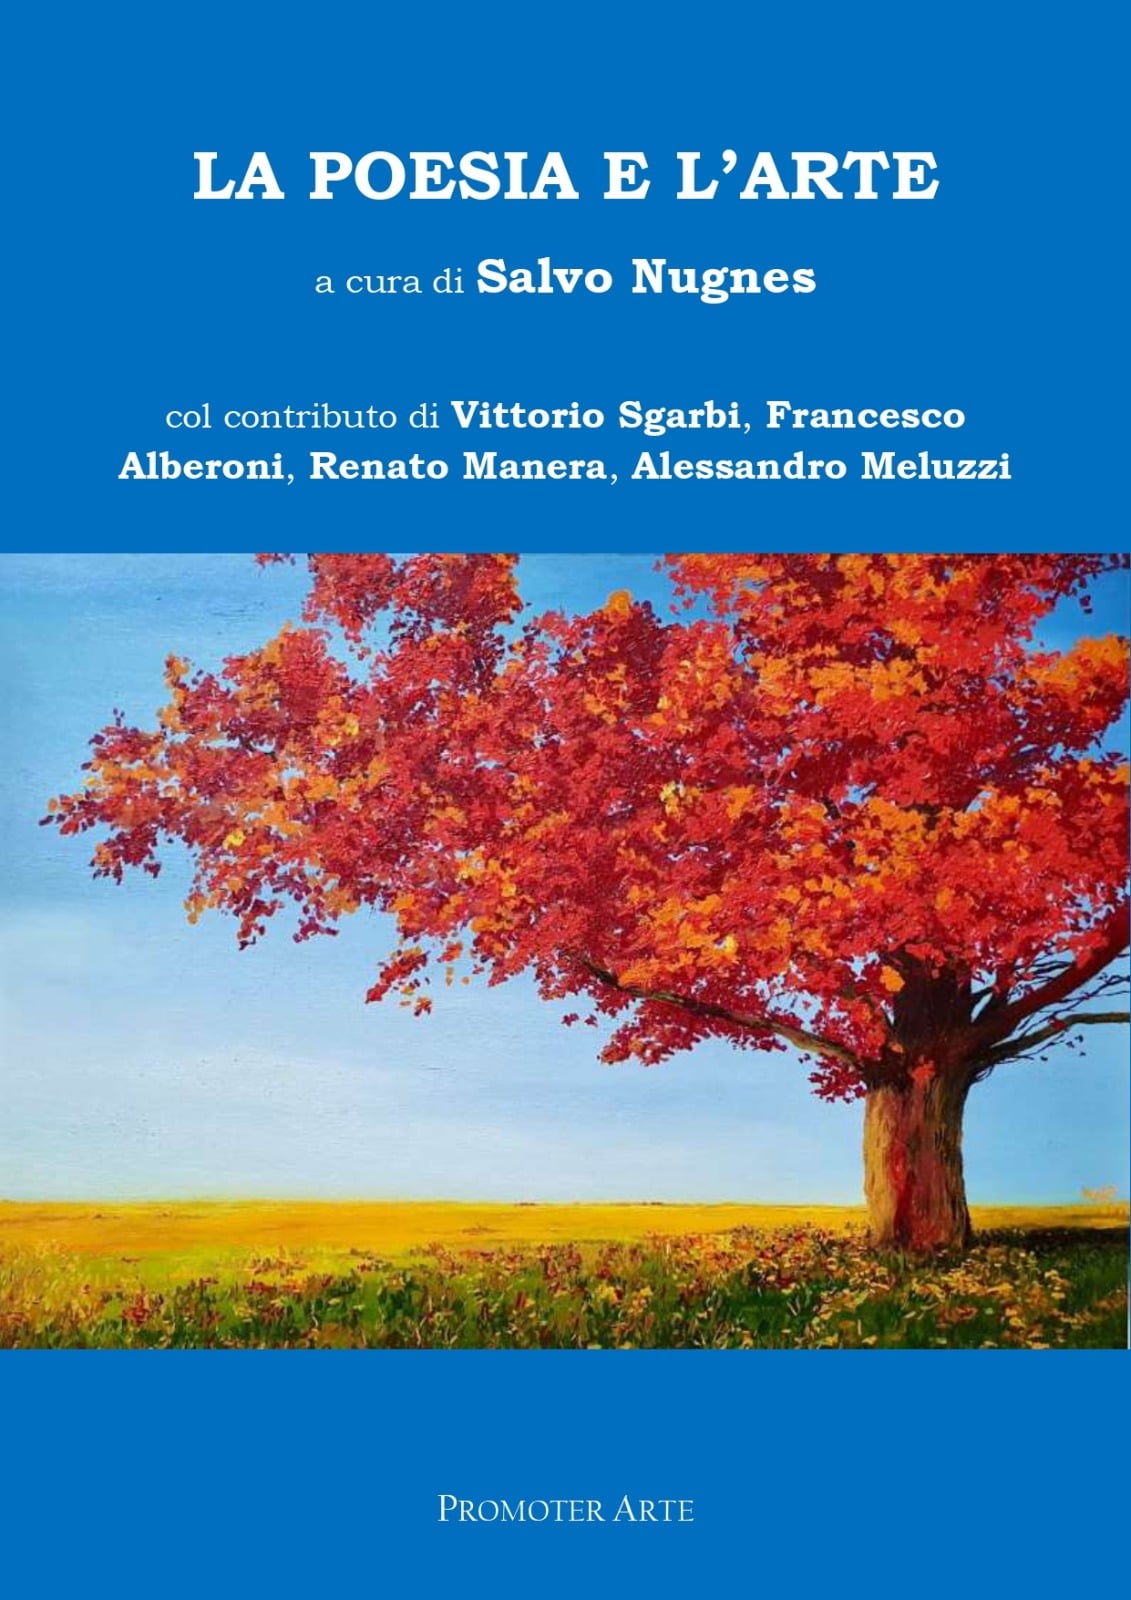 “La Poesia e l’Arte”: in copertina del nuovo libro di Salvo Nugnes l’opera della talentuosa Federica Nobili